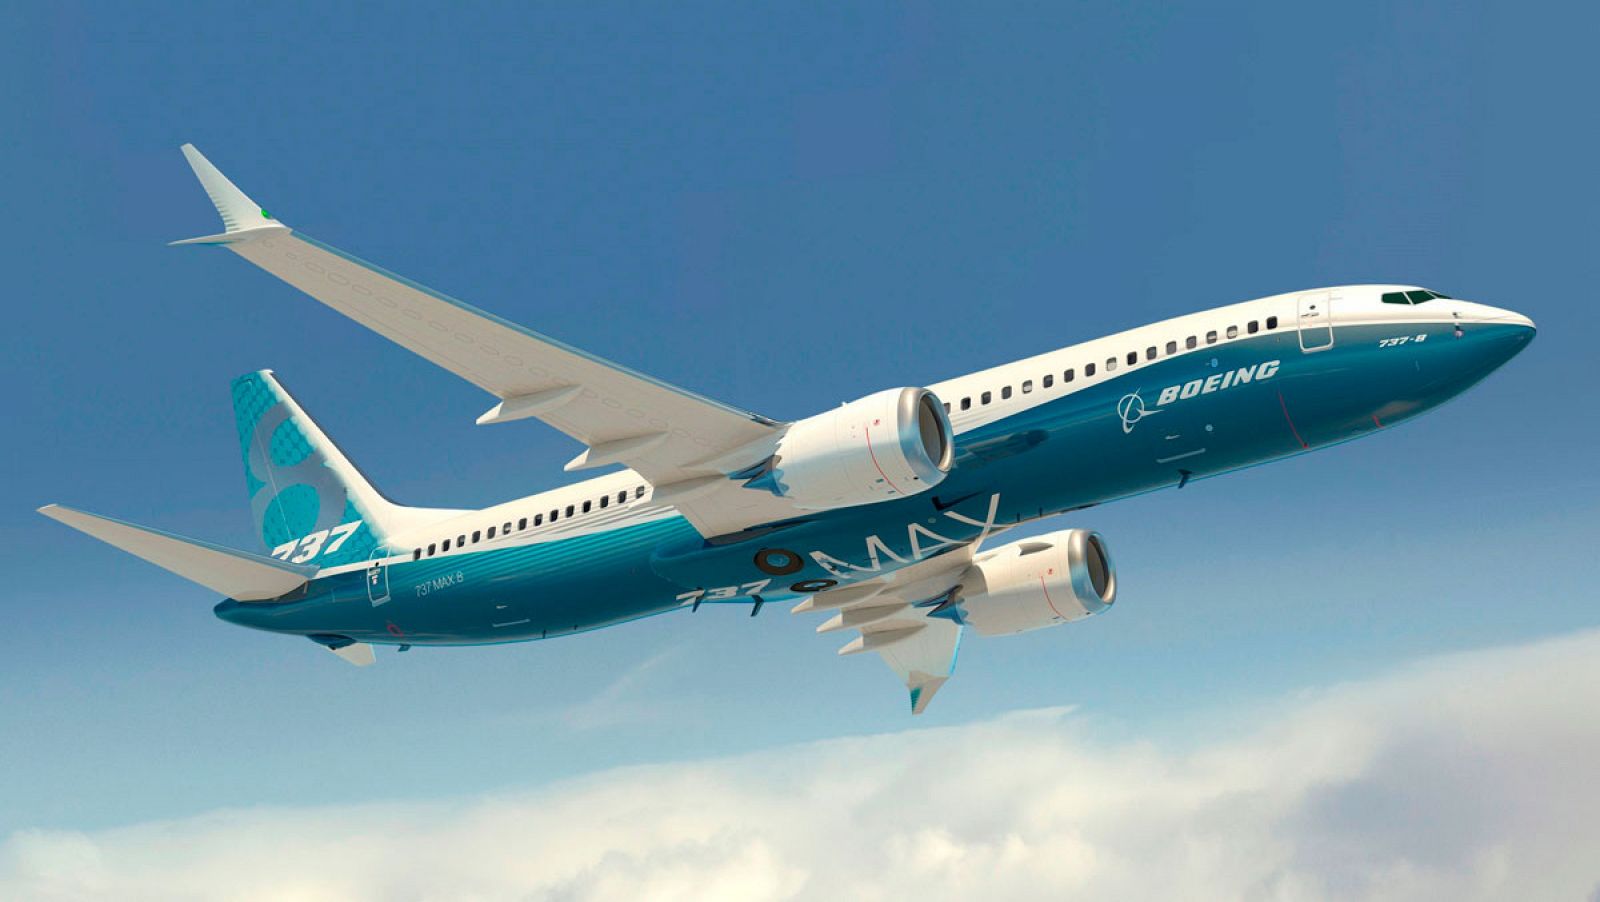 El 737 Max, uno de los modelos estrella de Boeing, ha sufrido dos accidentes fatales en menos de cinco meses.